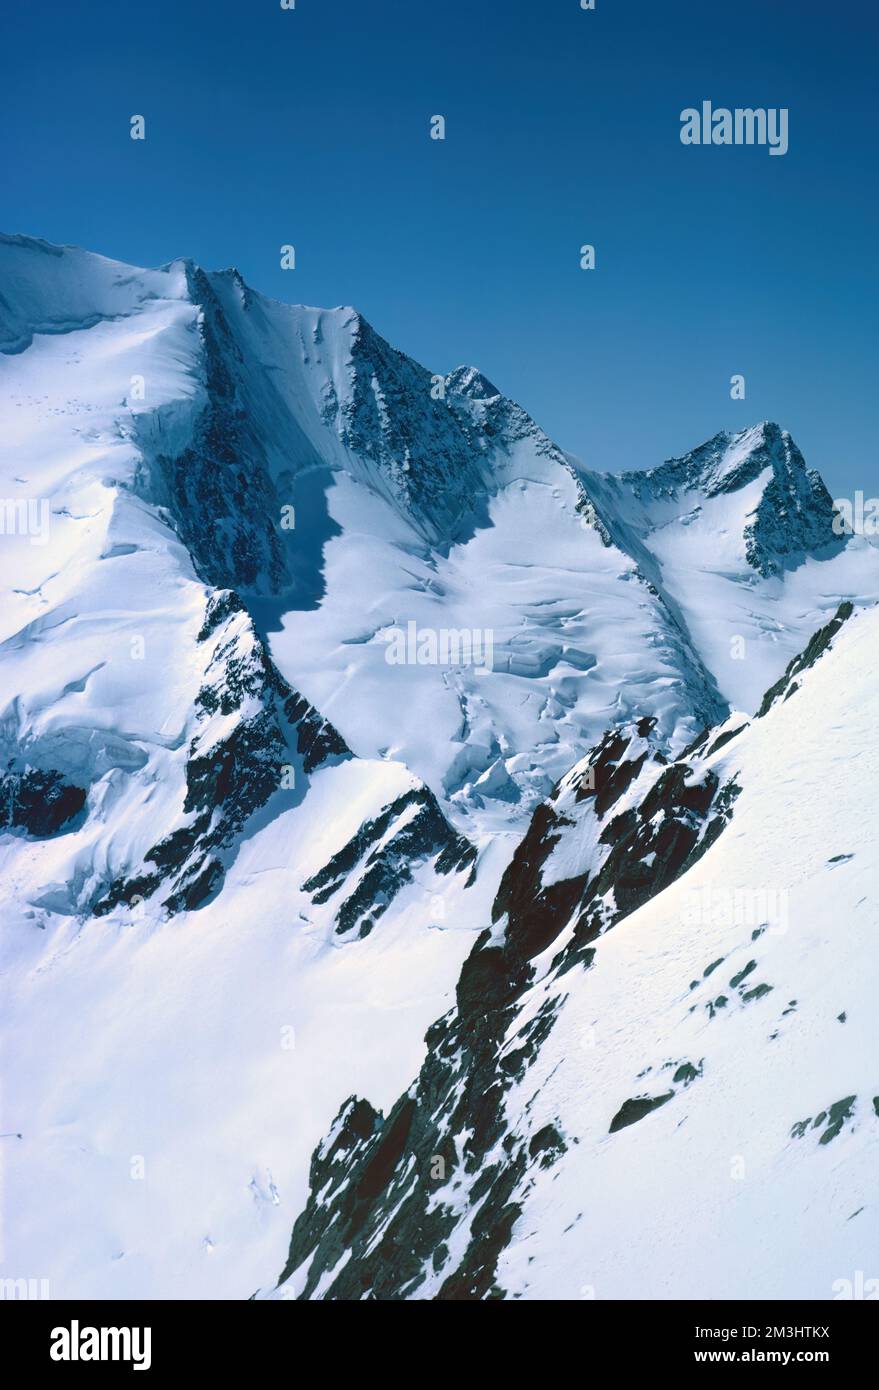 Panorama des montagnes enneigées et des hauts sommets alpins dans l'Oberland bernois en Suisse Banque D'Images